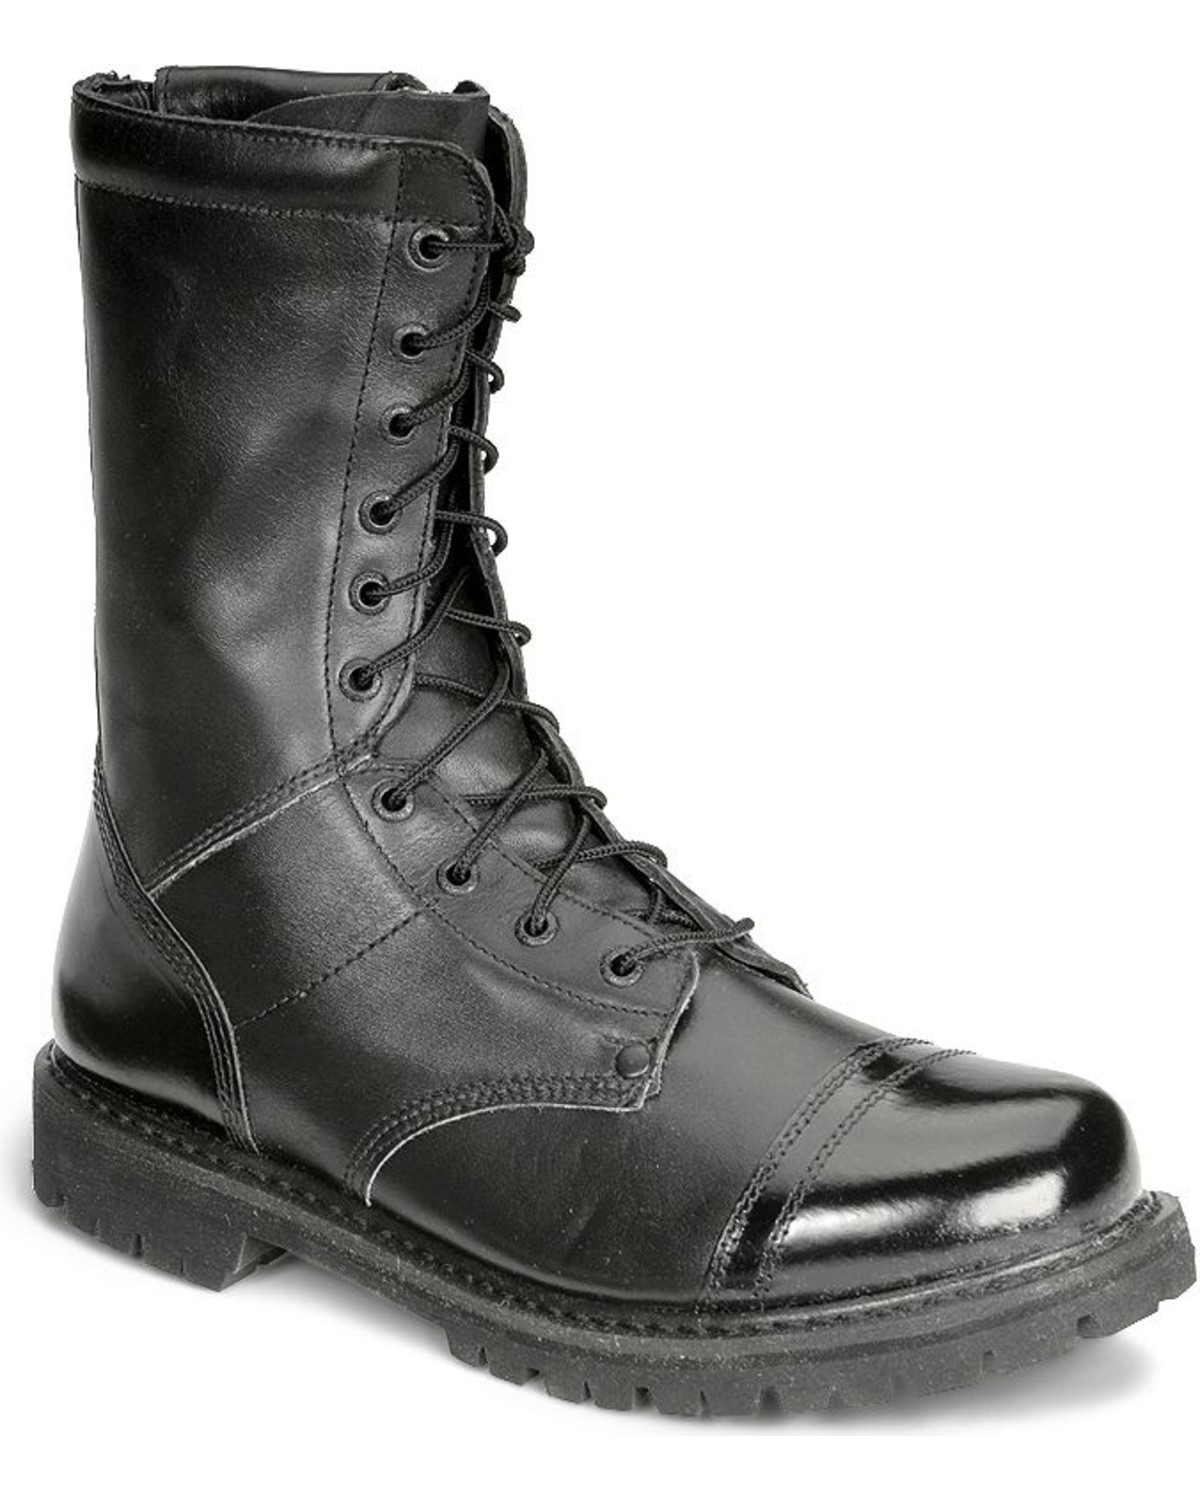 steel toe paratrooper boots